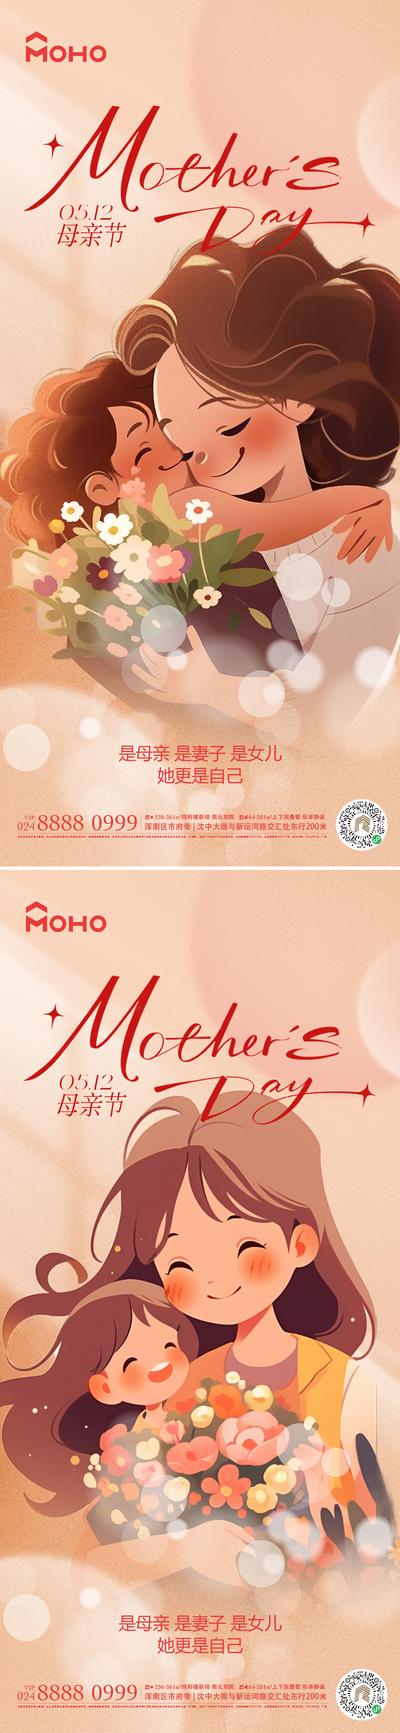 【南门网】广告 海报 节日 母亲节 母亲 母女 母子 爱 母爱 感恩 拥抱 呵护 陪伴 鲜花 送花 花